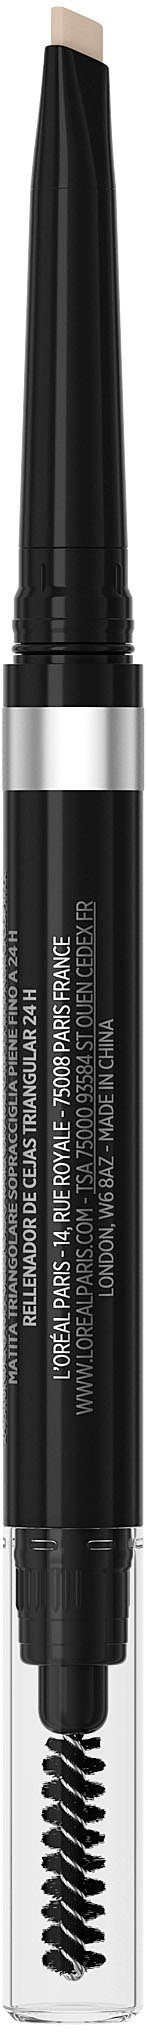 L'ORÉAL PARIS Infaillible Pencil, Brows Paris Augenbrauen-Stift für Augenbrauen 24h Browliner L'Oréal ausdrucksstarke